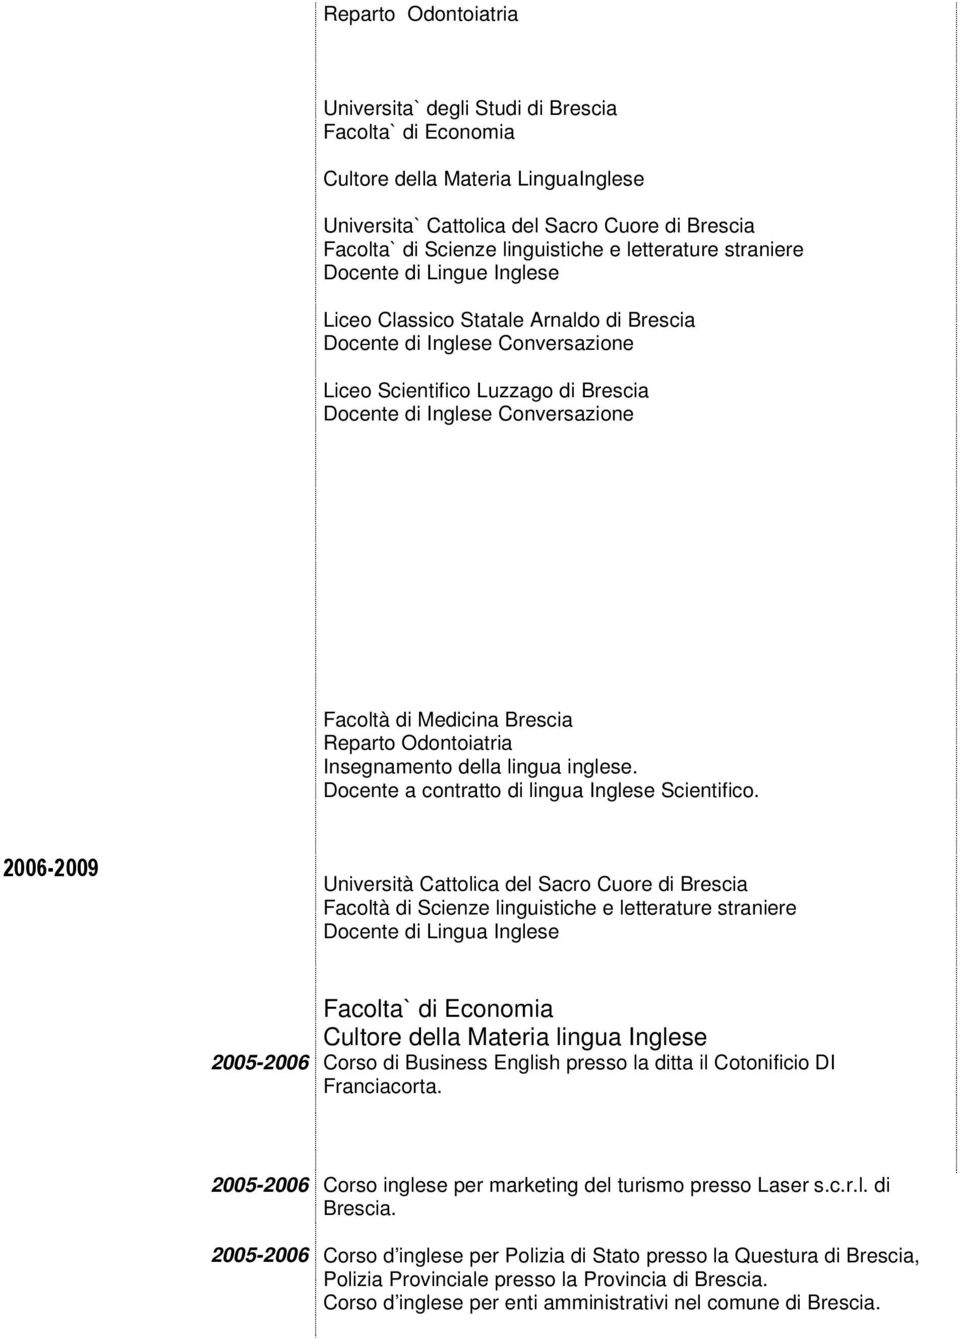 2006-2009 Università Cattolica del Sacro Cuore di Brescia Facoltà di Scienze linguistiche e letterature straniere Docente di Lingua Inglese Facolta` di Economia Cultore della Materia lingua Inglese